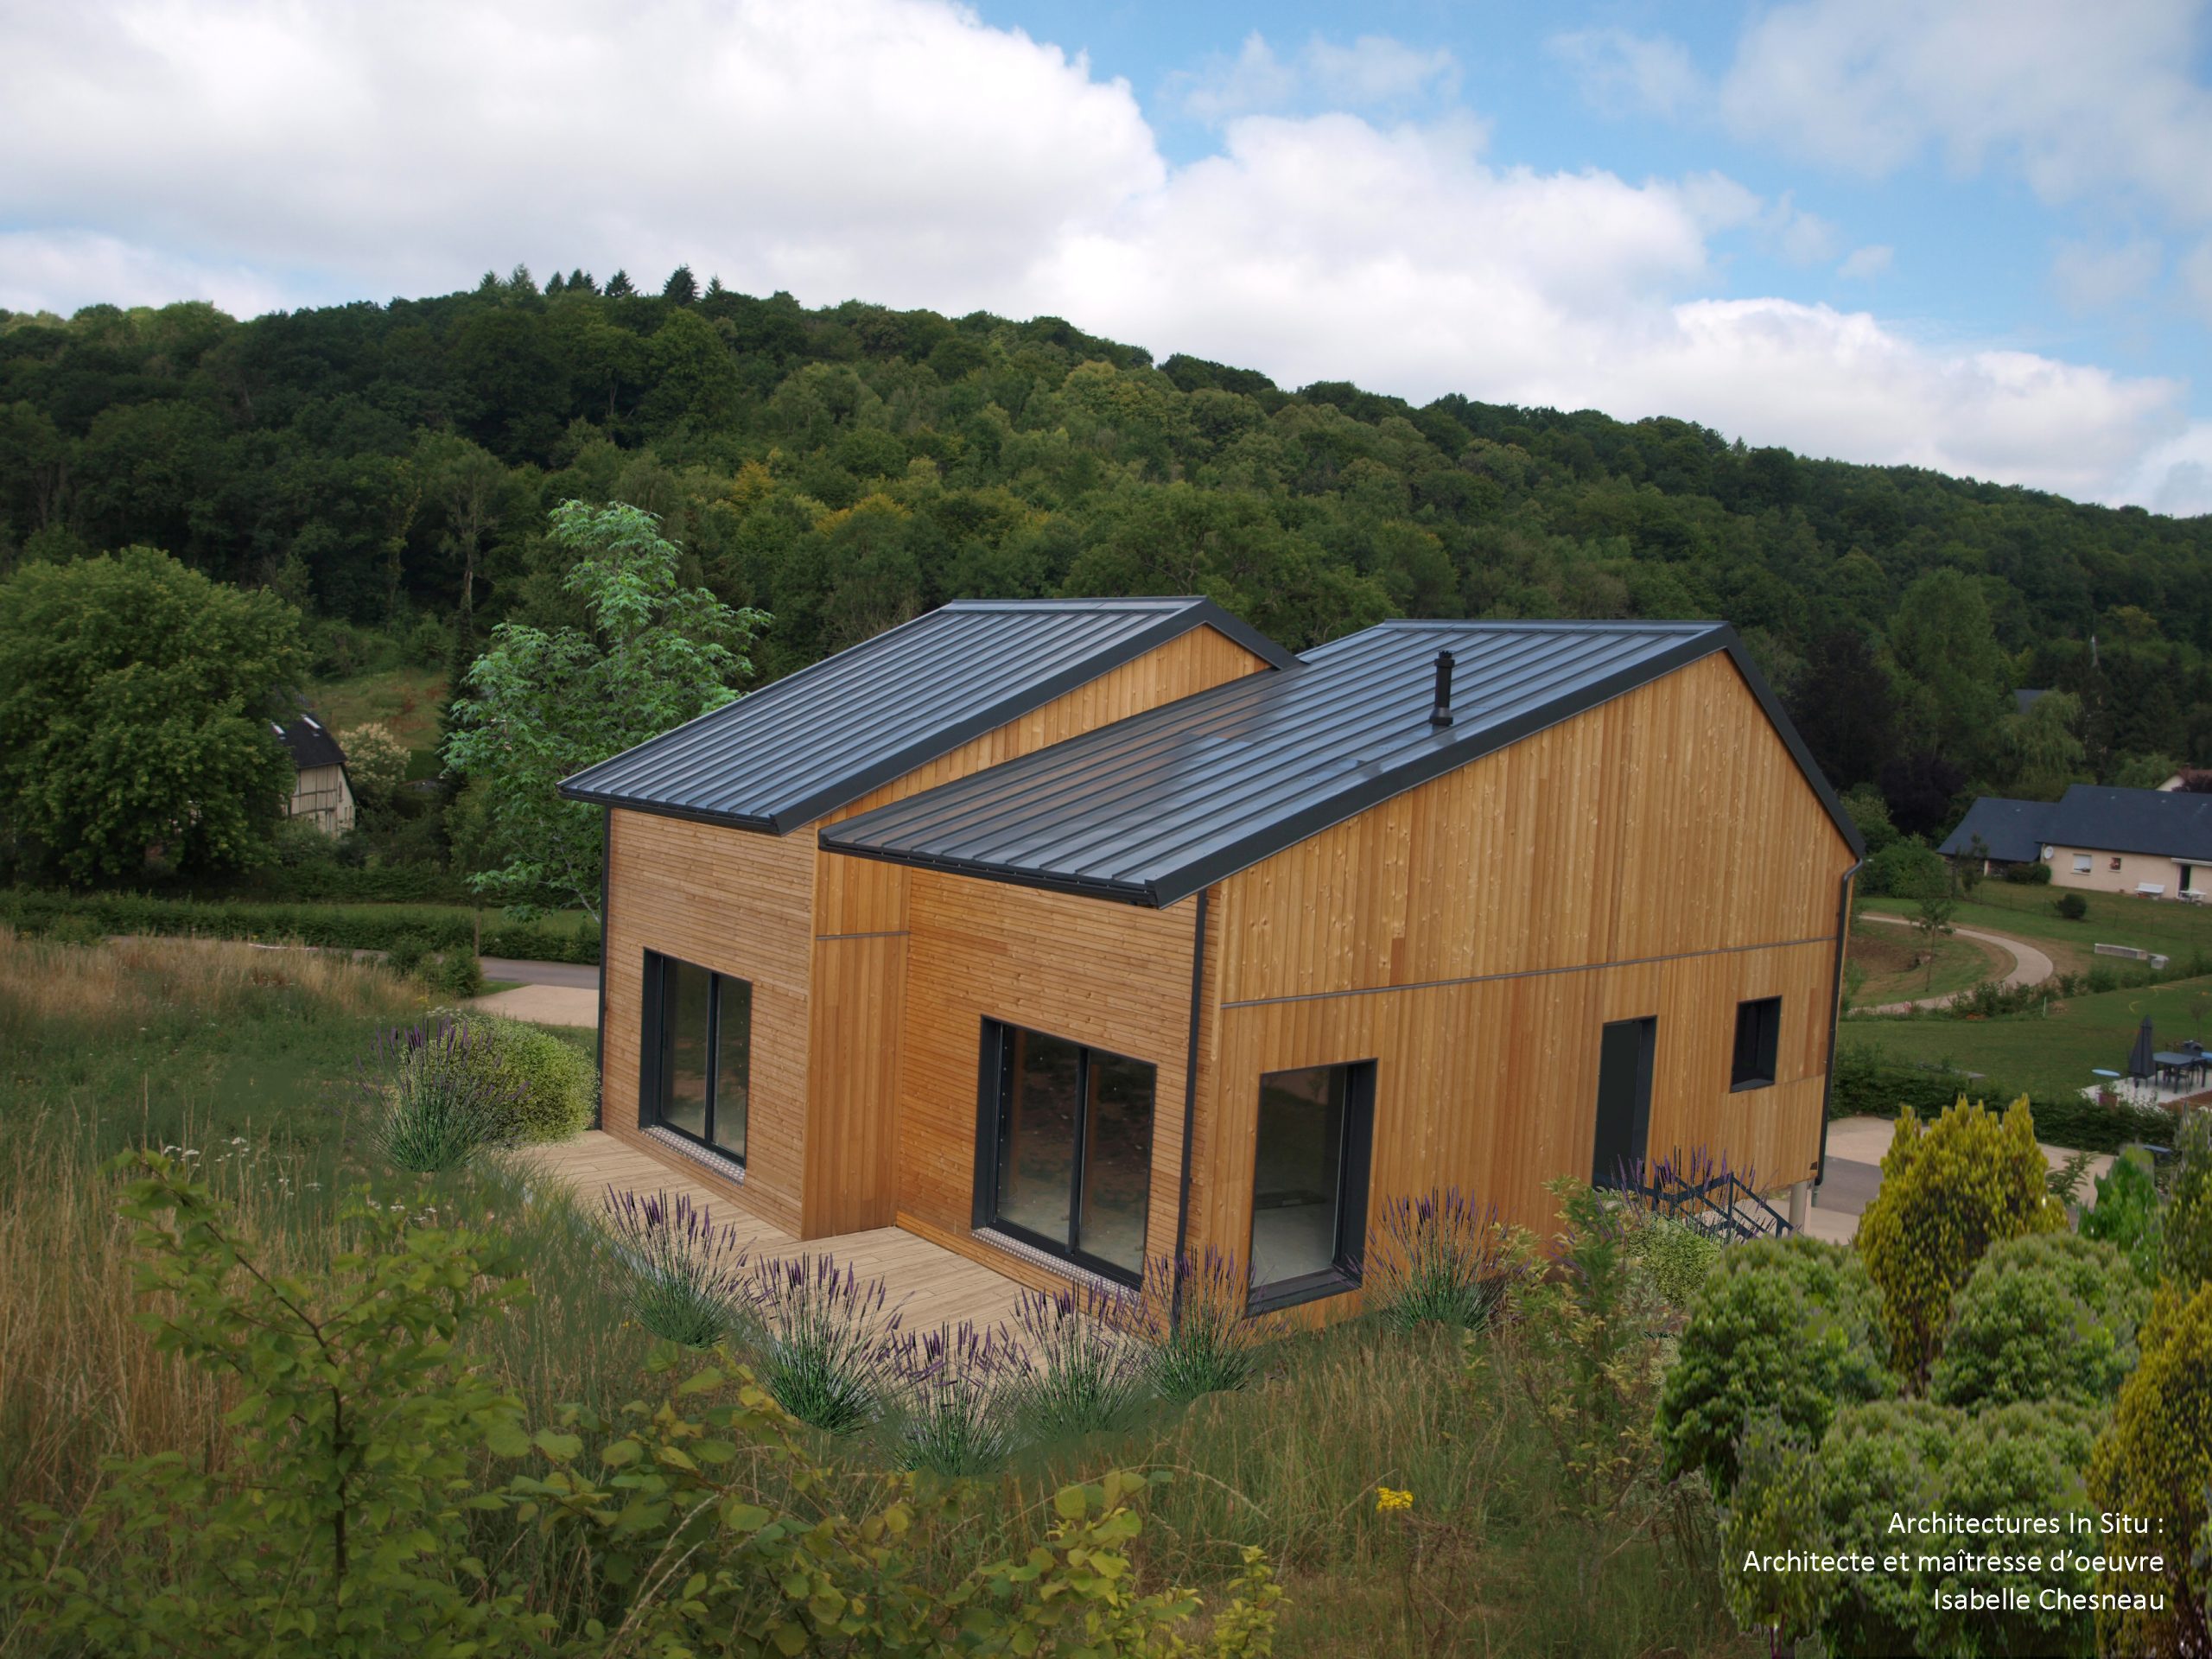 Ecologie et architecture, comment votre architecte spécialiste de l’ossature bois à Rouen, vous accompagne dans vos projets responsables  ?